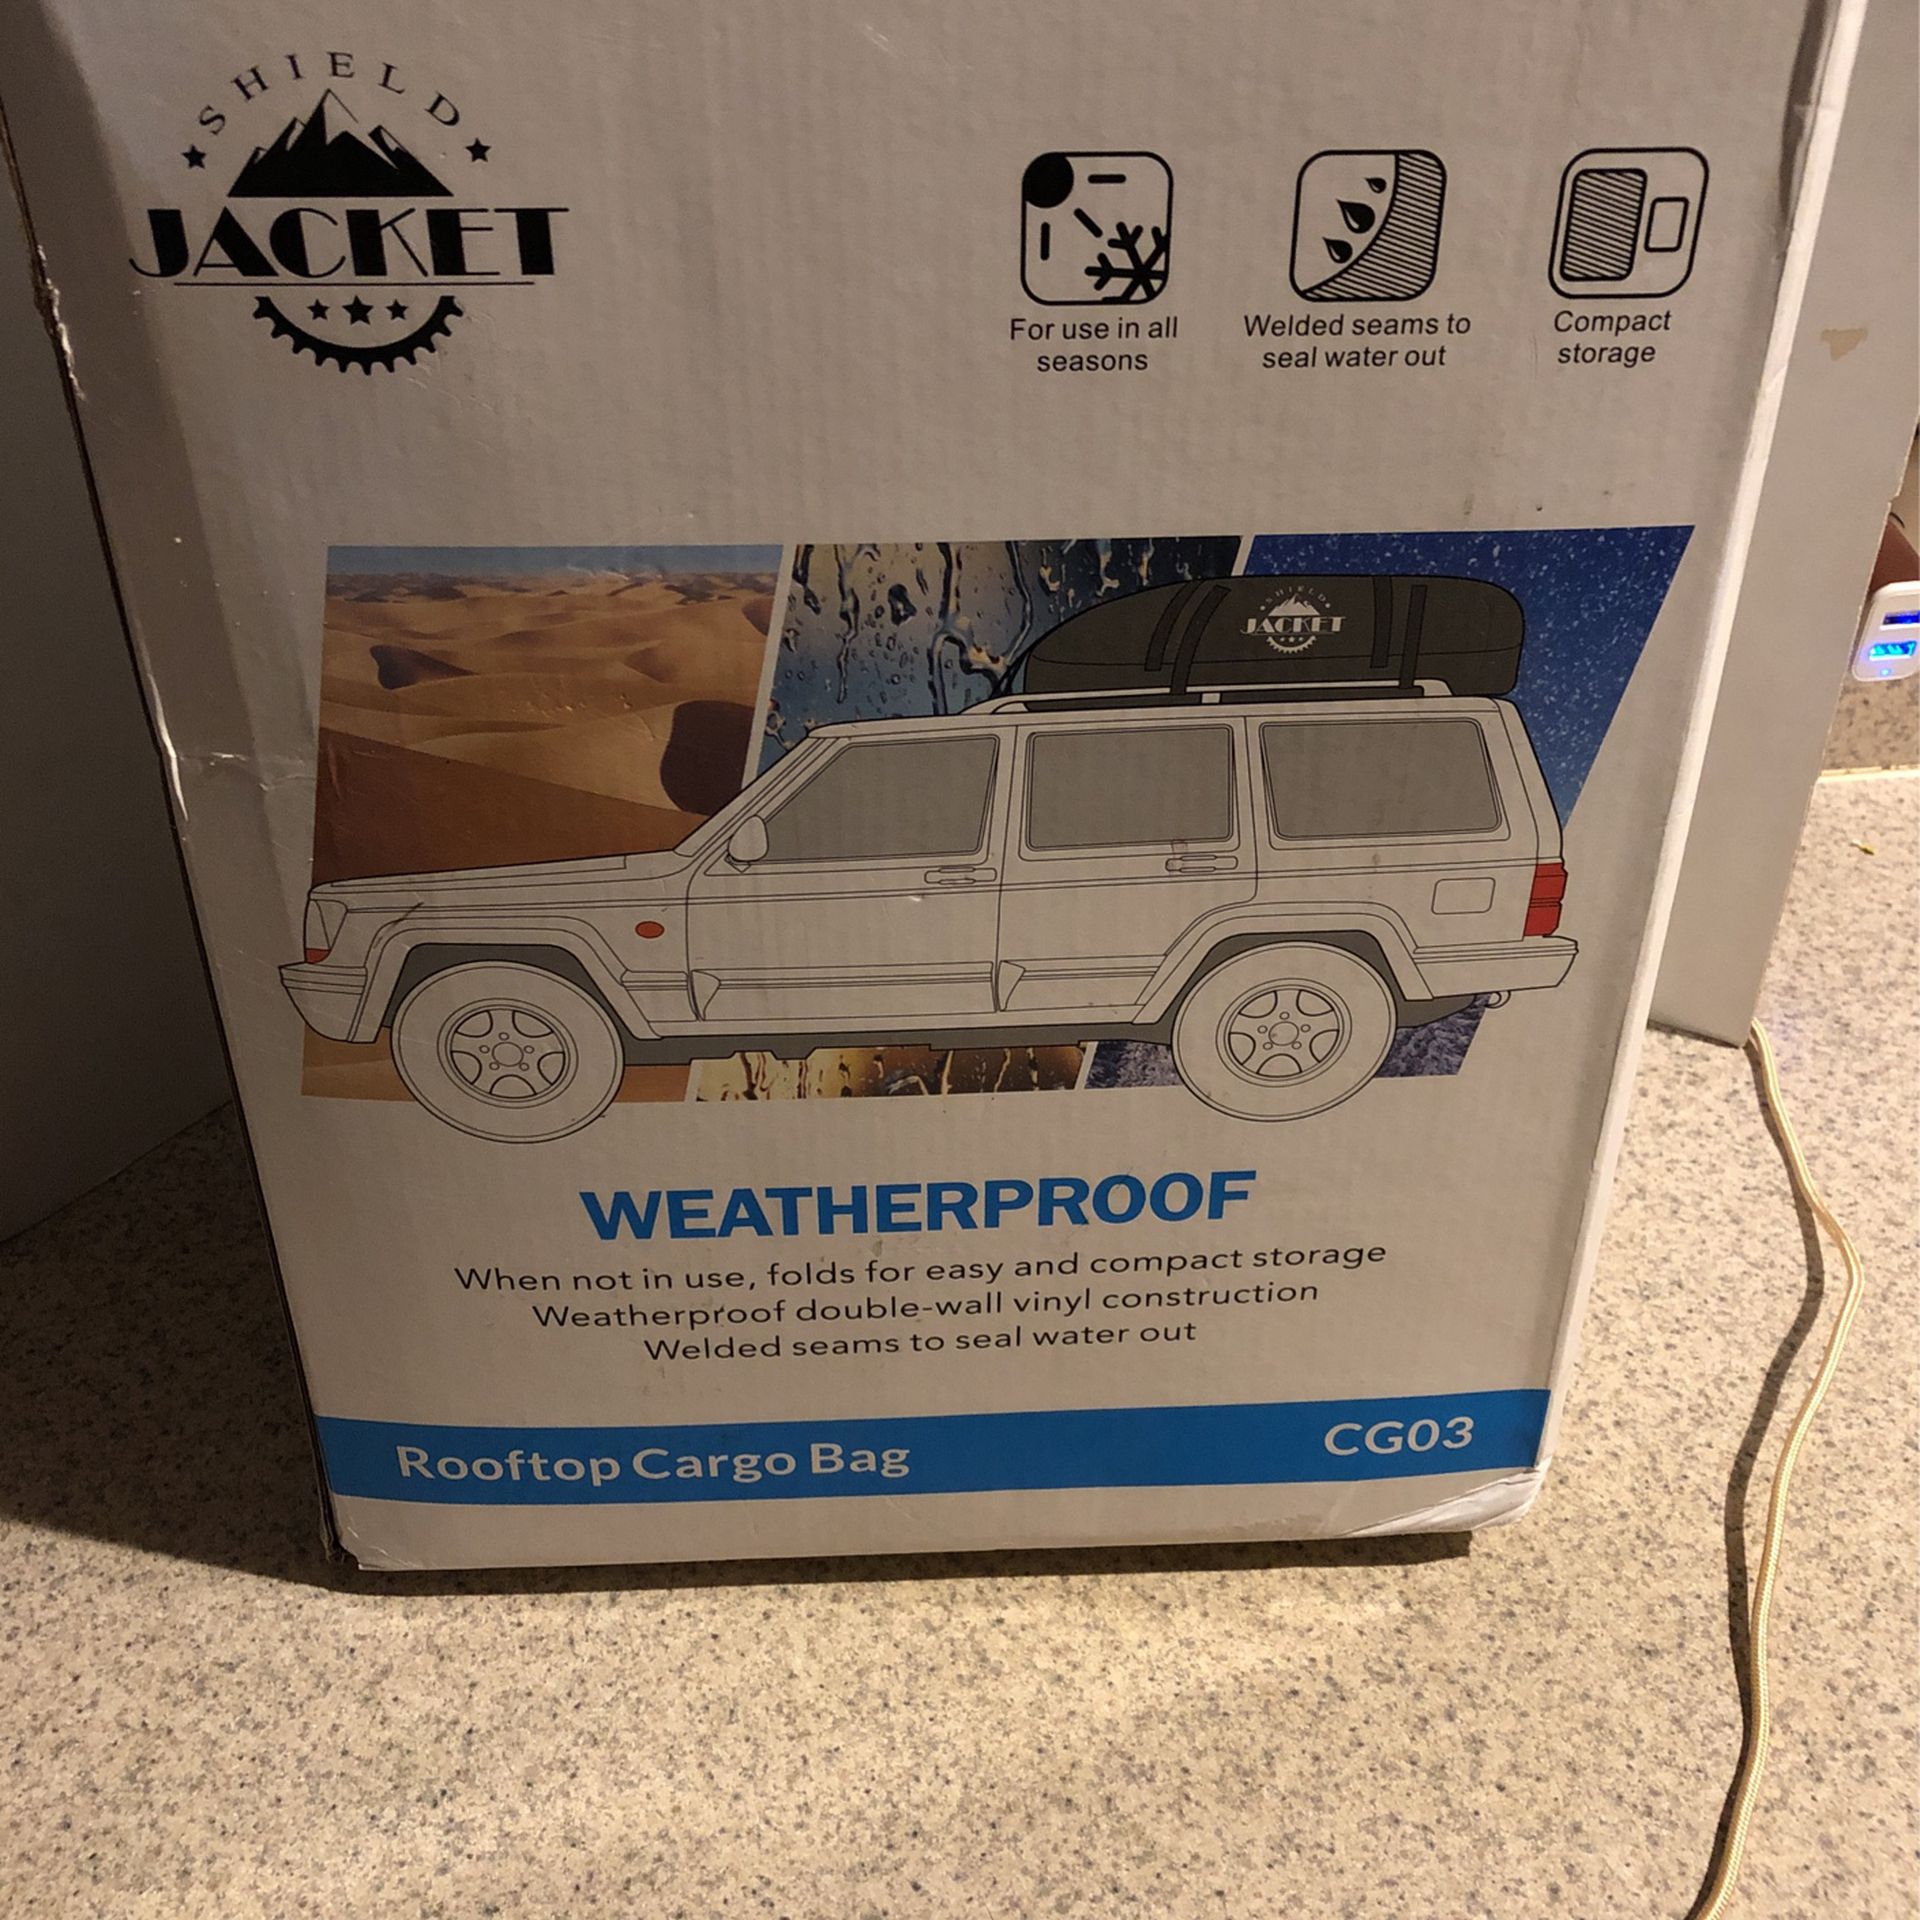 Shield Jacket Weatherproof Rooftop Cargo Bag